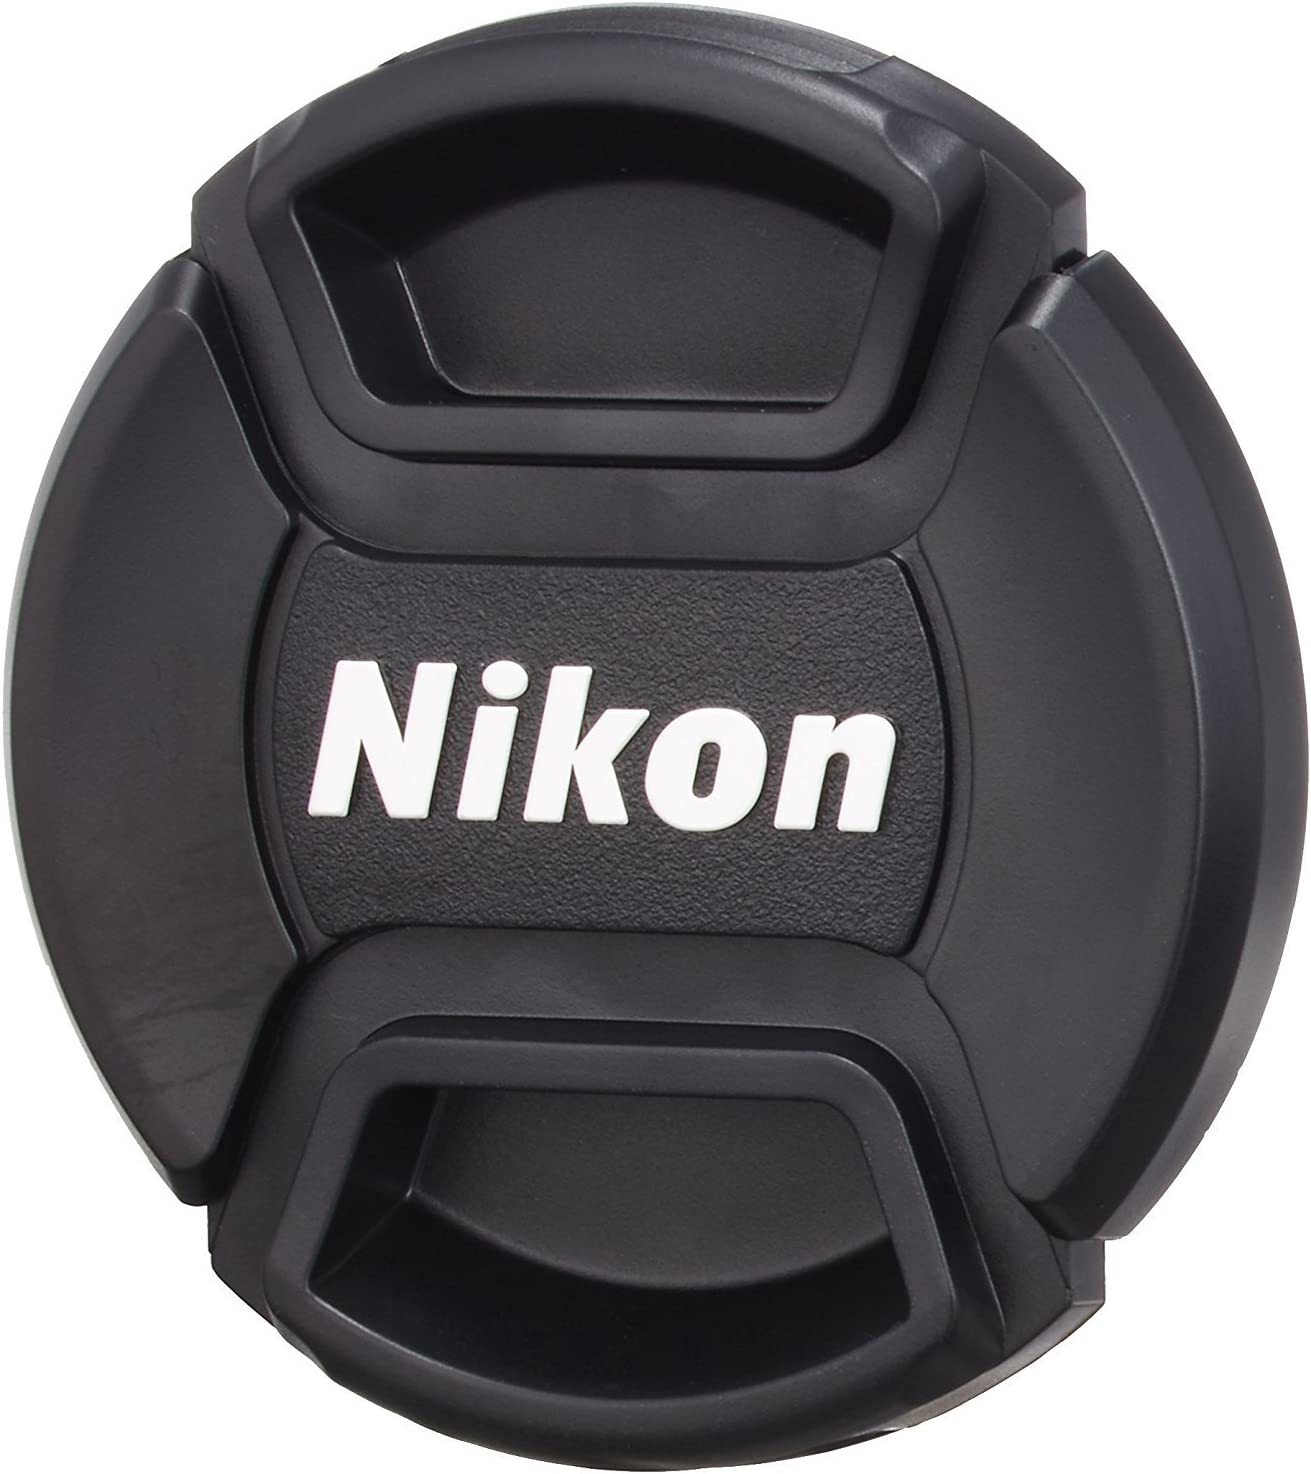 Nikon LC 58mm Lens Ön Kapak